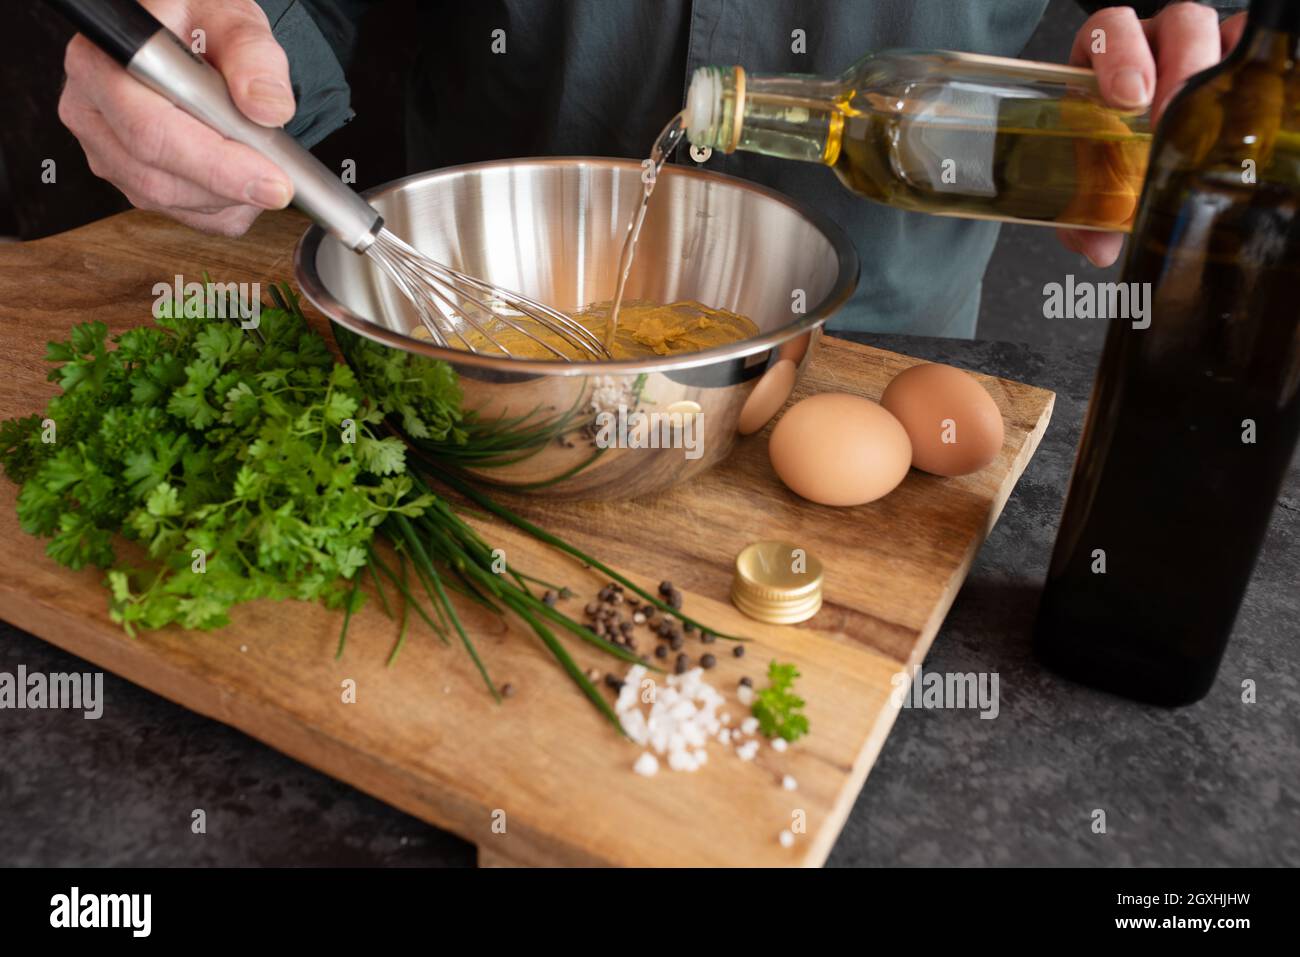 Préparer une sauce gribiche pour les asperges vertes. Préparez des ingrédients frais pour un plat d'accompagnement savoureux. Gastronomie et style de vie. Gros plan. Banque D'Images